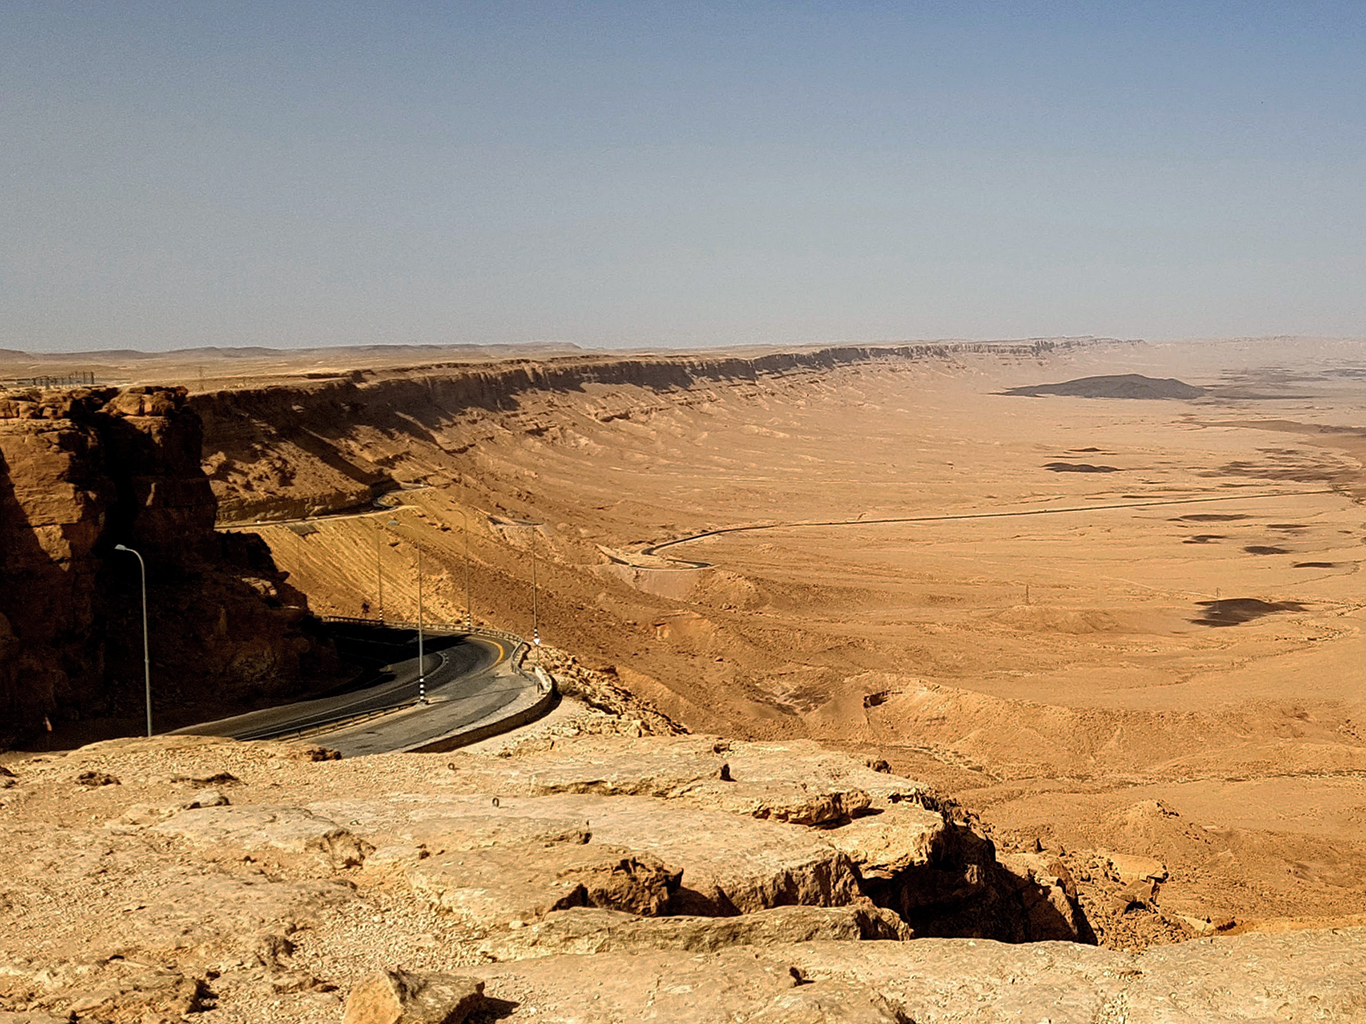 Machteš Ramon, čtyřicet km dlouhá pouštní krasová sníženina